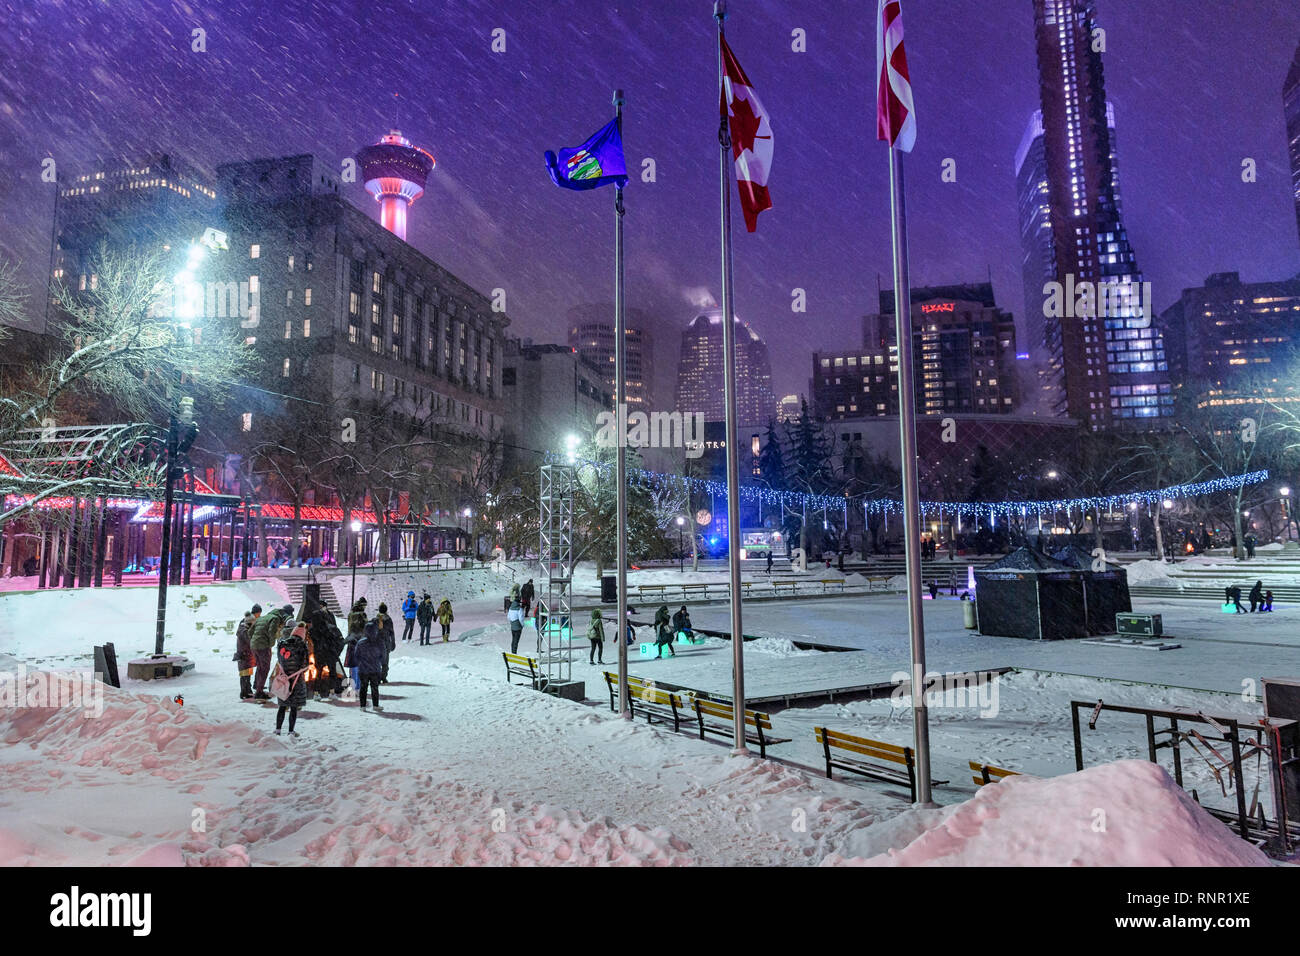 Schneereiche Winter Nacht am Calgary Olympic Plaza Feuerstelle. Alberta, Kanada Stockfoto